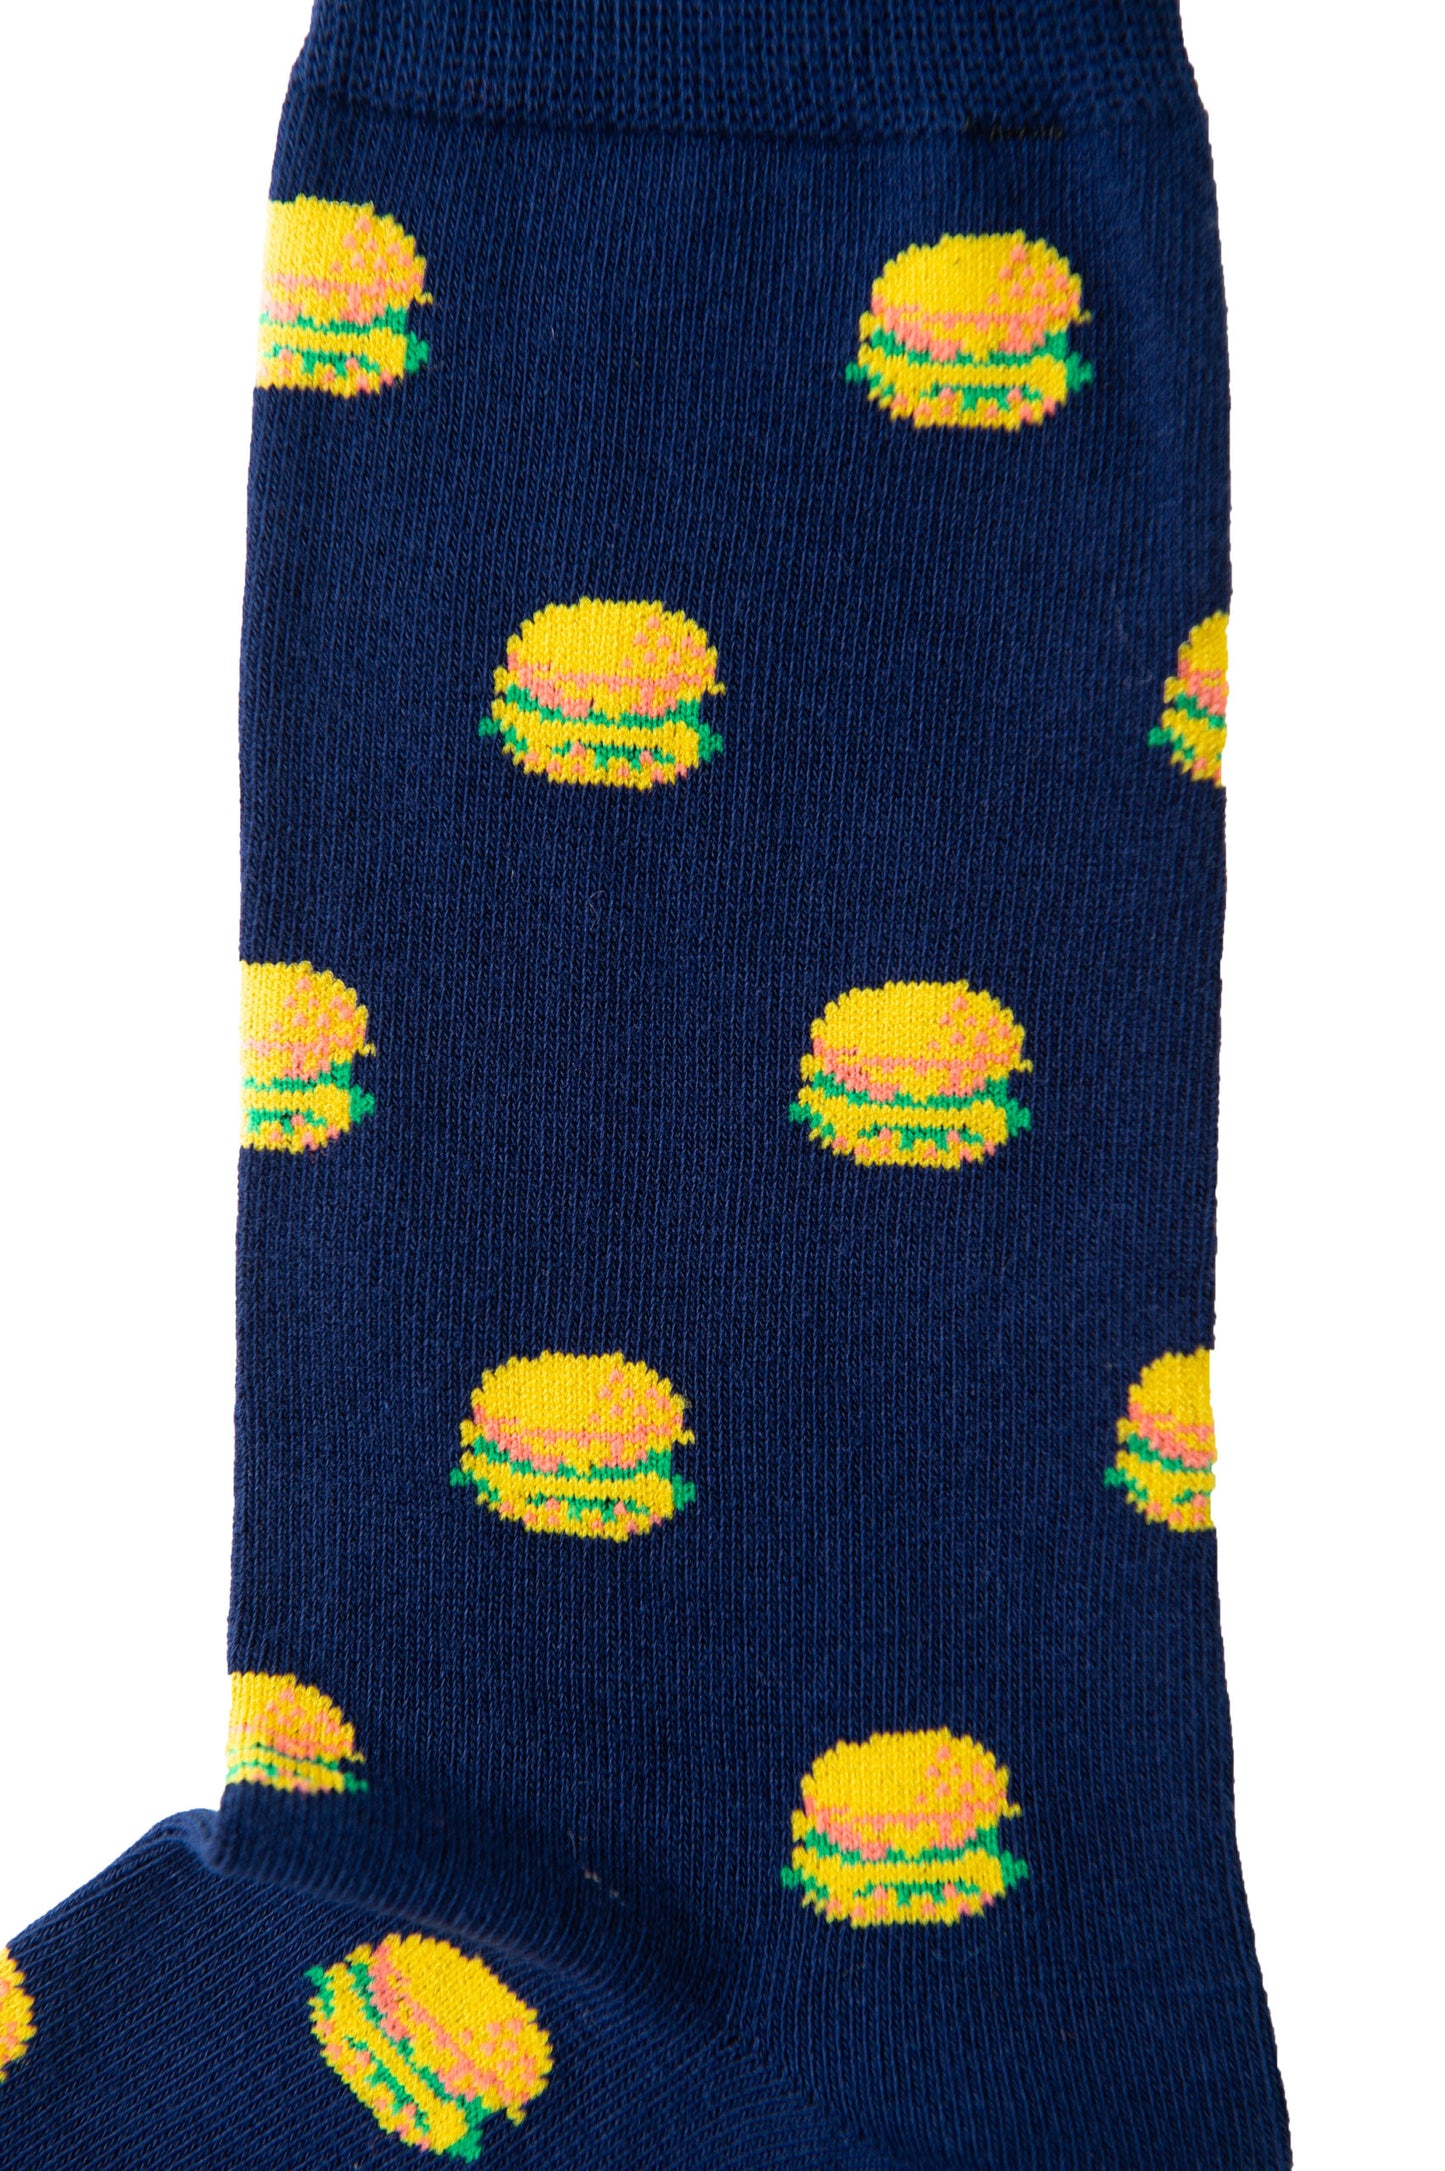 A pair of Burger Socks.